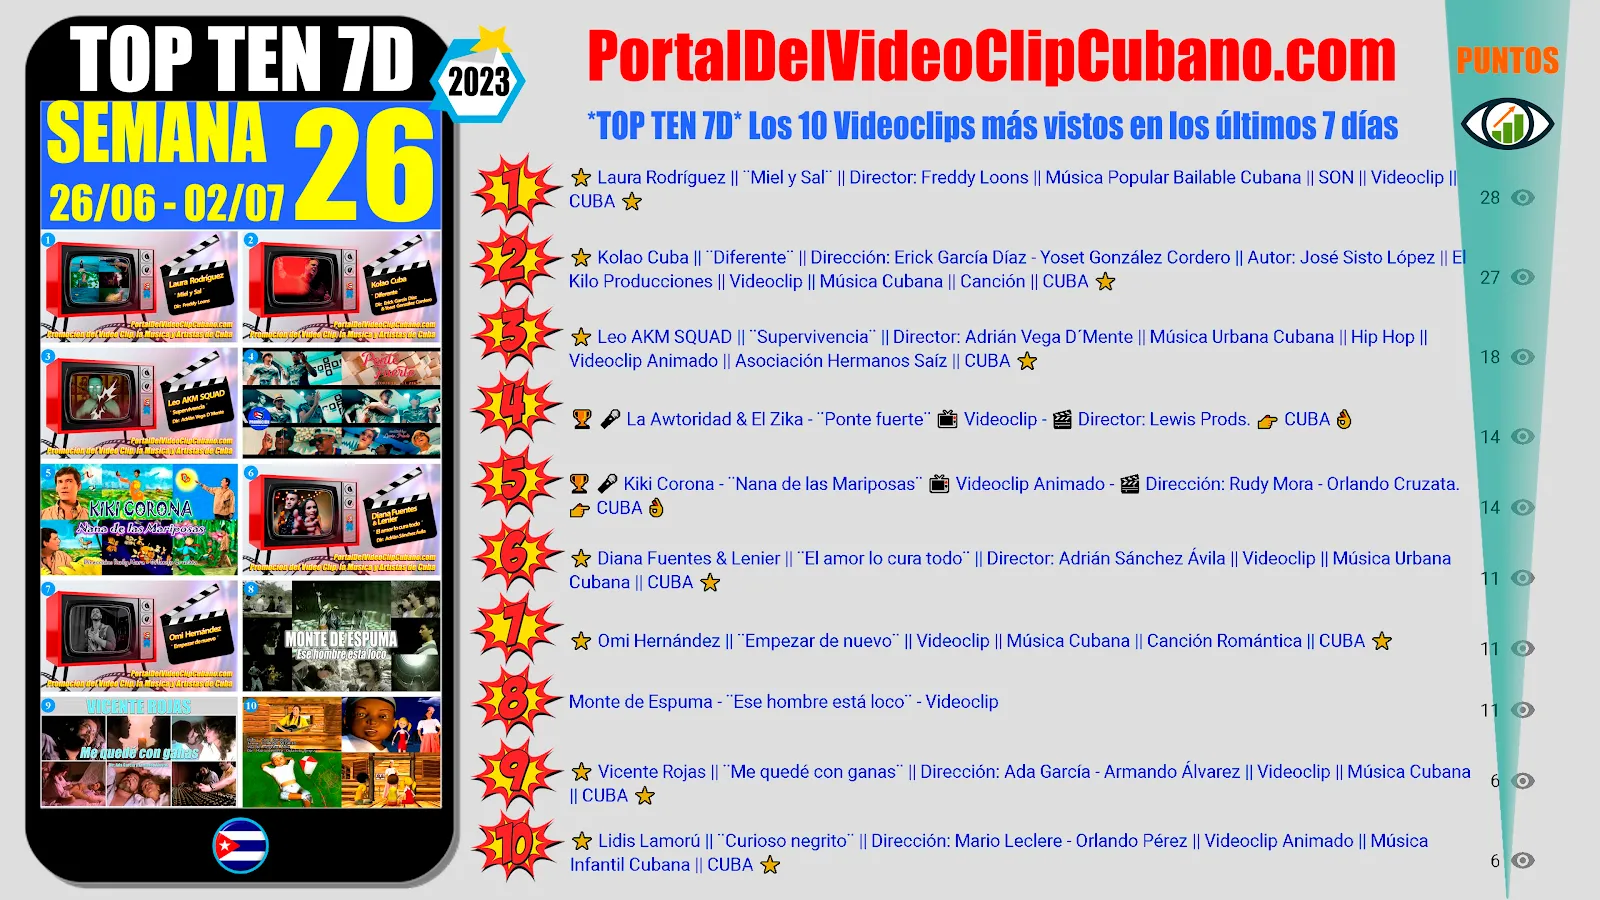 Artistas ganadores del * TOP TEN 7D * con los 10 Videoclips más vistos en la semana 26 (26/06 a 02/07 de 2023) en el Portal Del Vídeo Clip Cubano